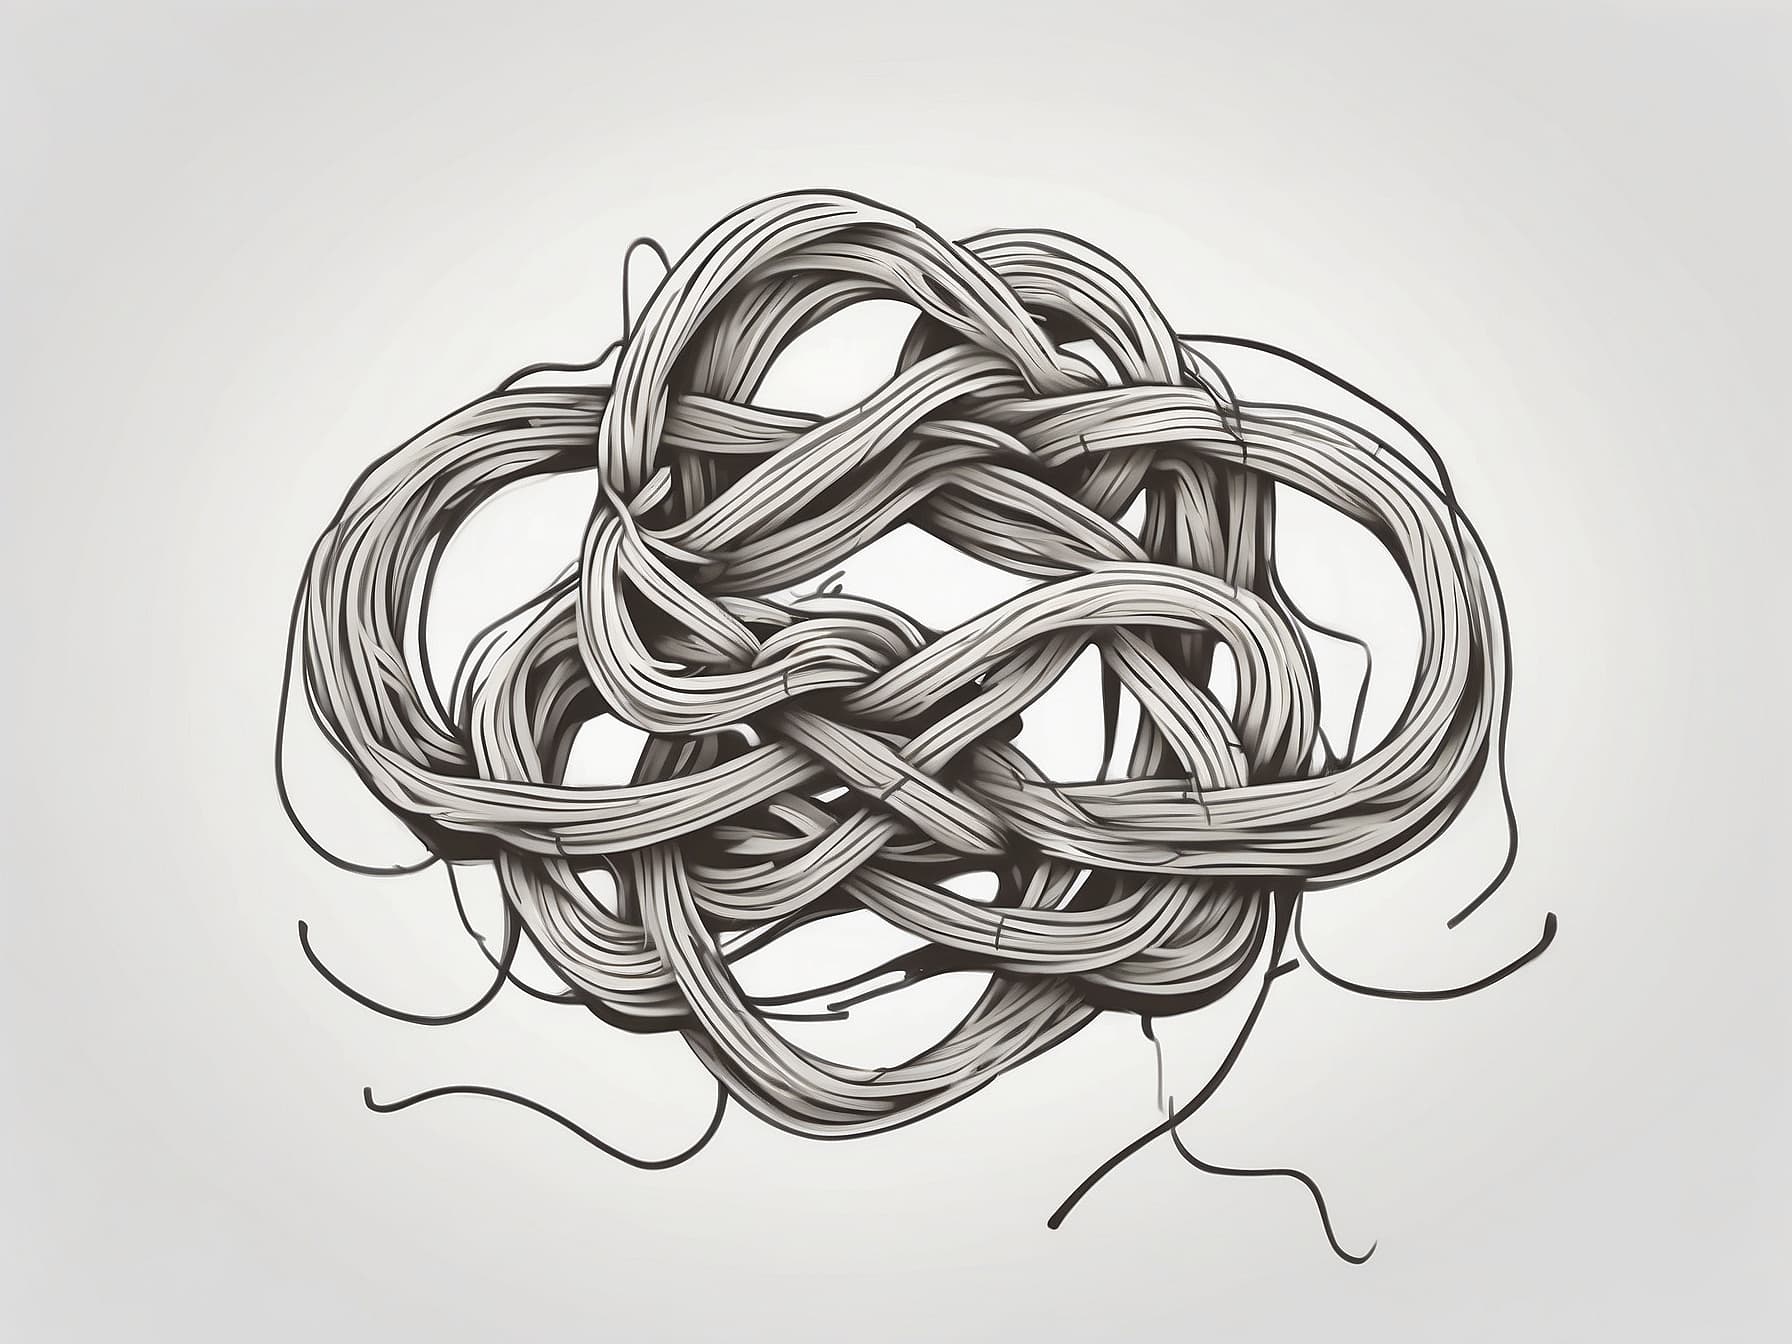 Ein Knoten, als Symbol von Zusammenhalt und Bindung unter Mitarbeitern